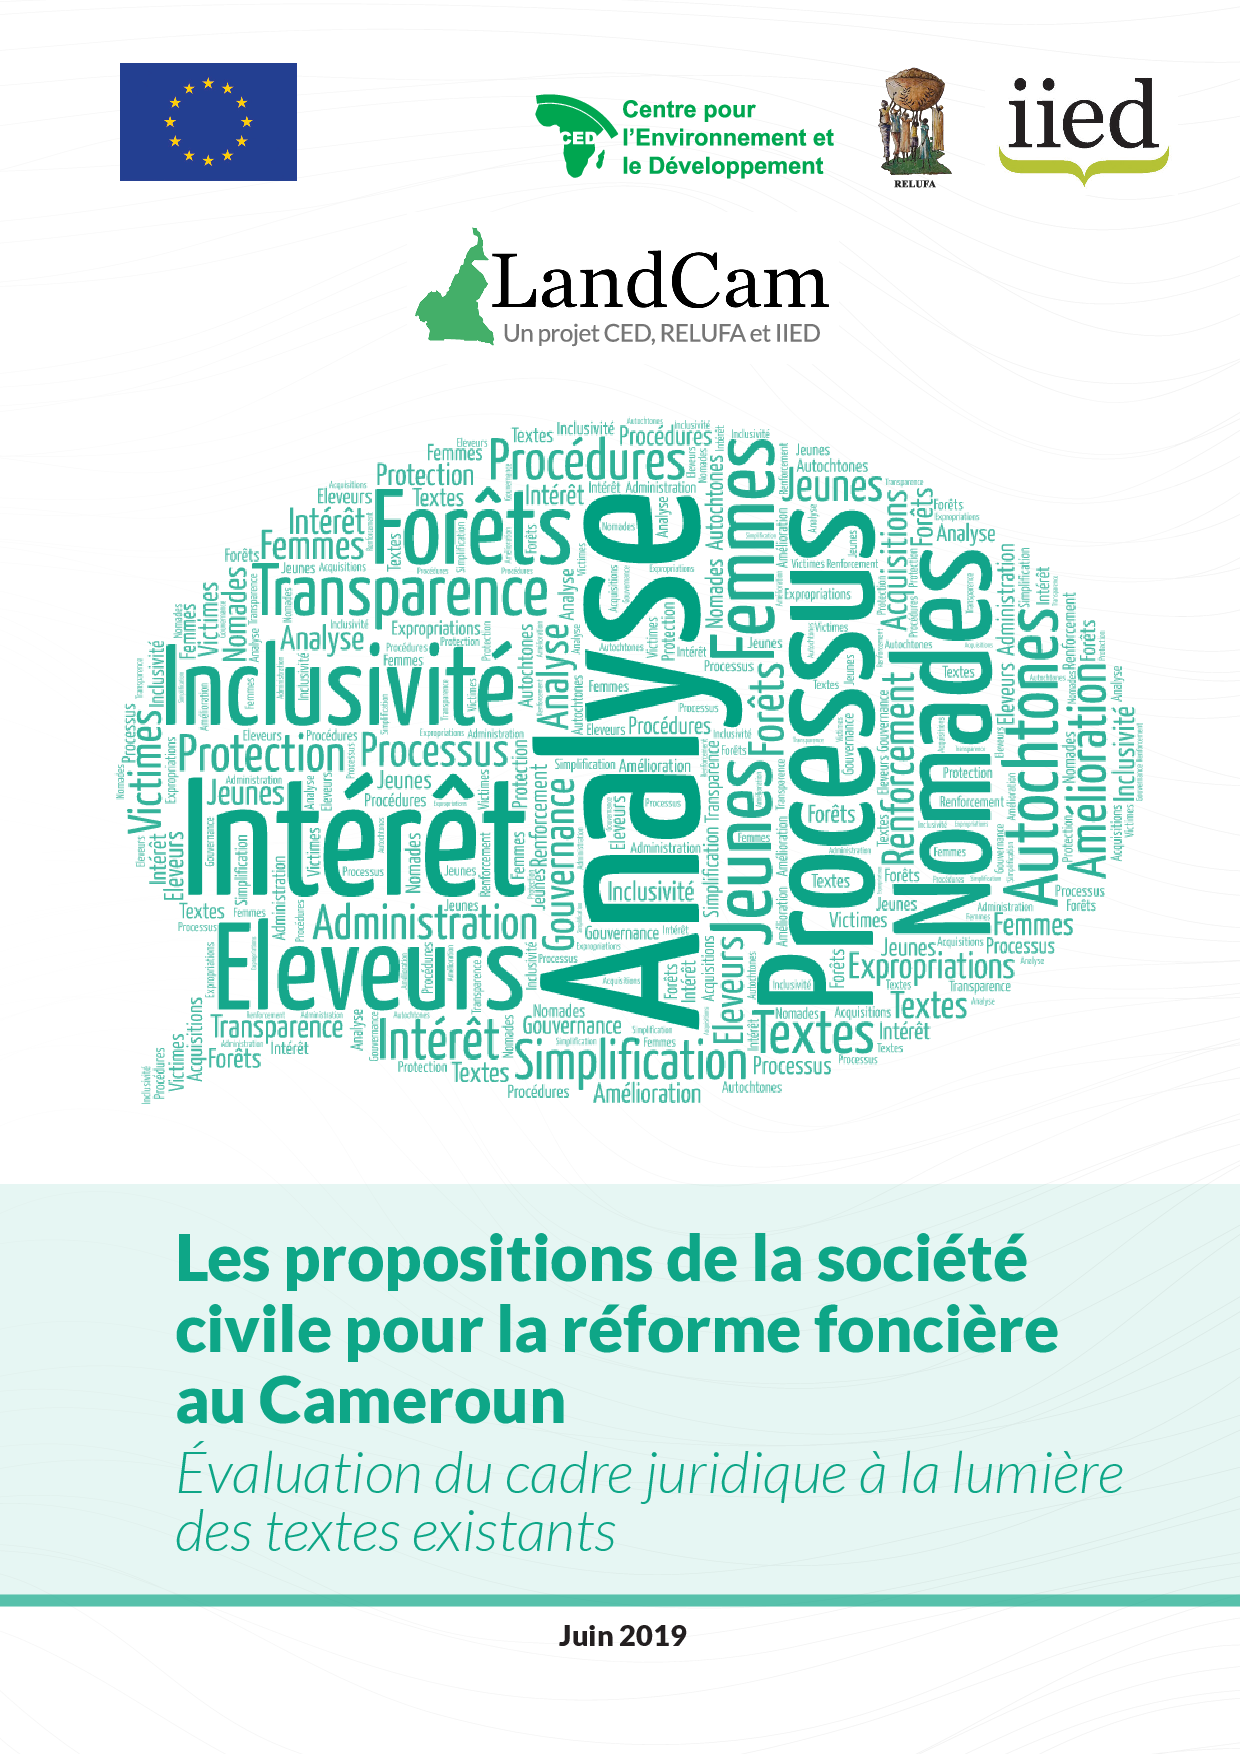 Les propositions de la société civile pour la réforme fonciere au Cameroun - LandCam.png